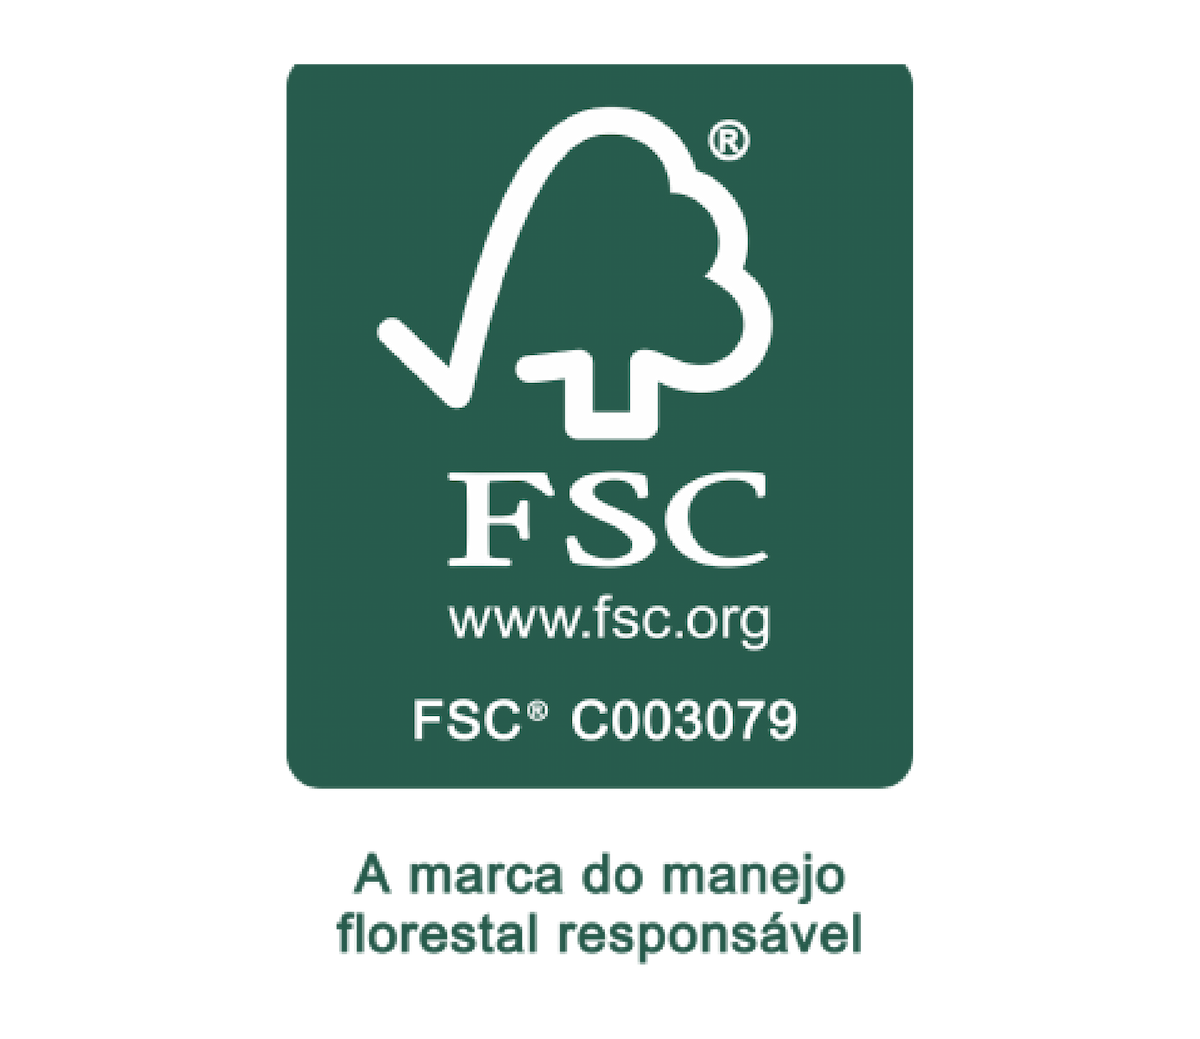 Logotipo da certificação FSC: A marca do manejo florestal responsável.